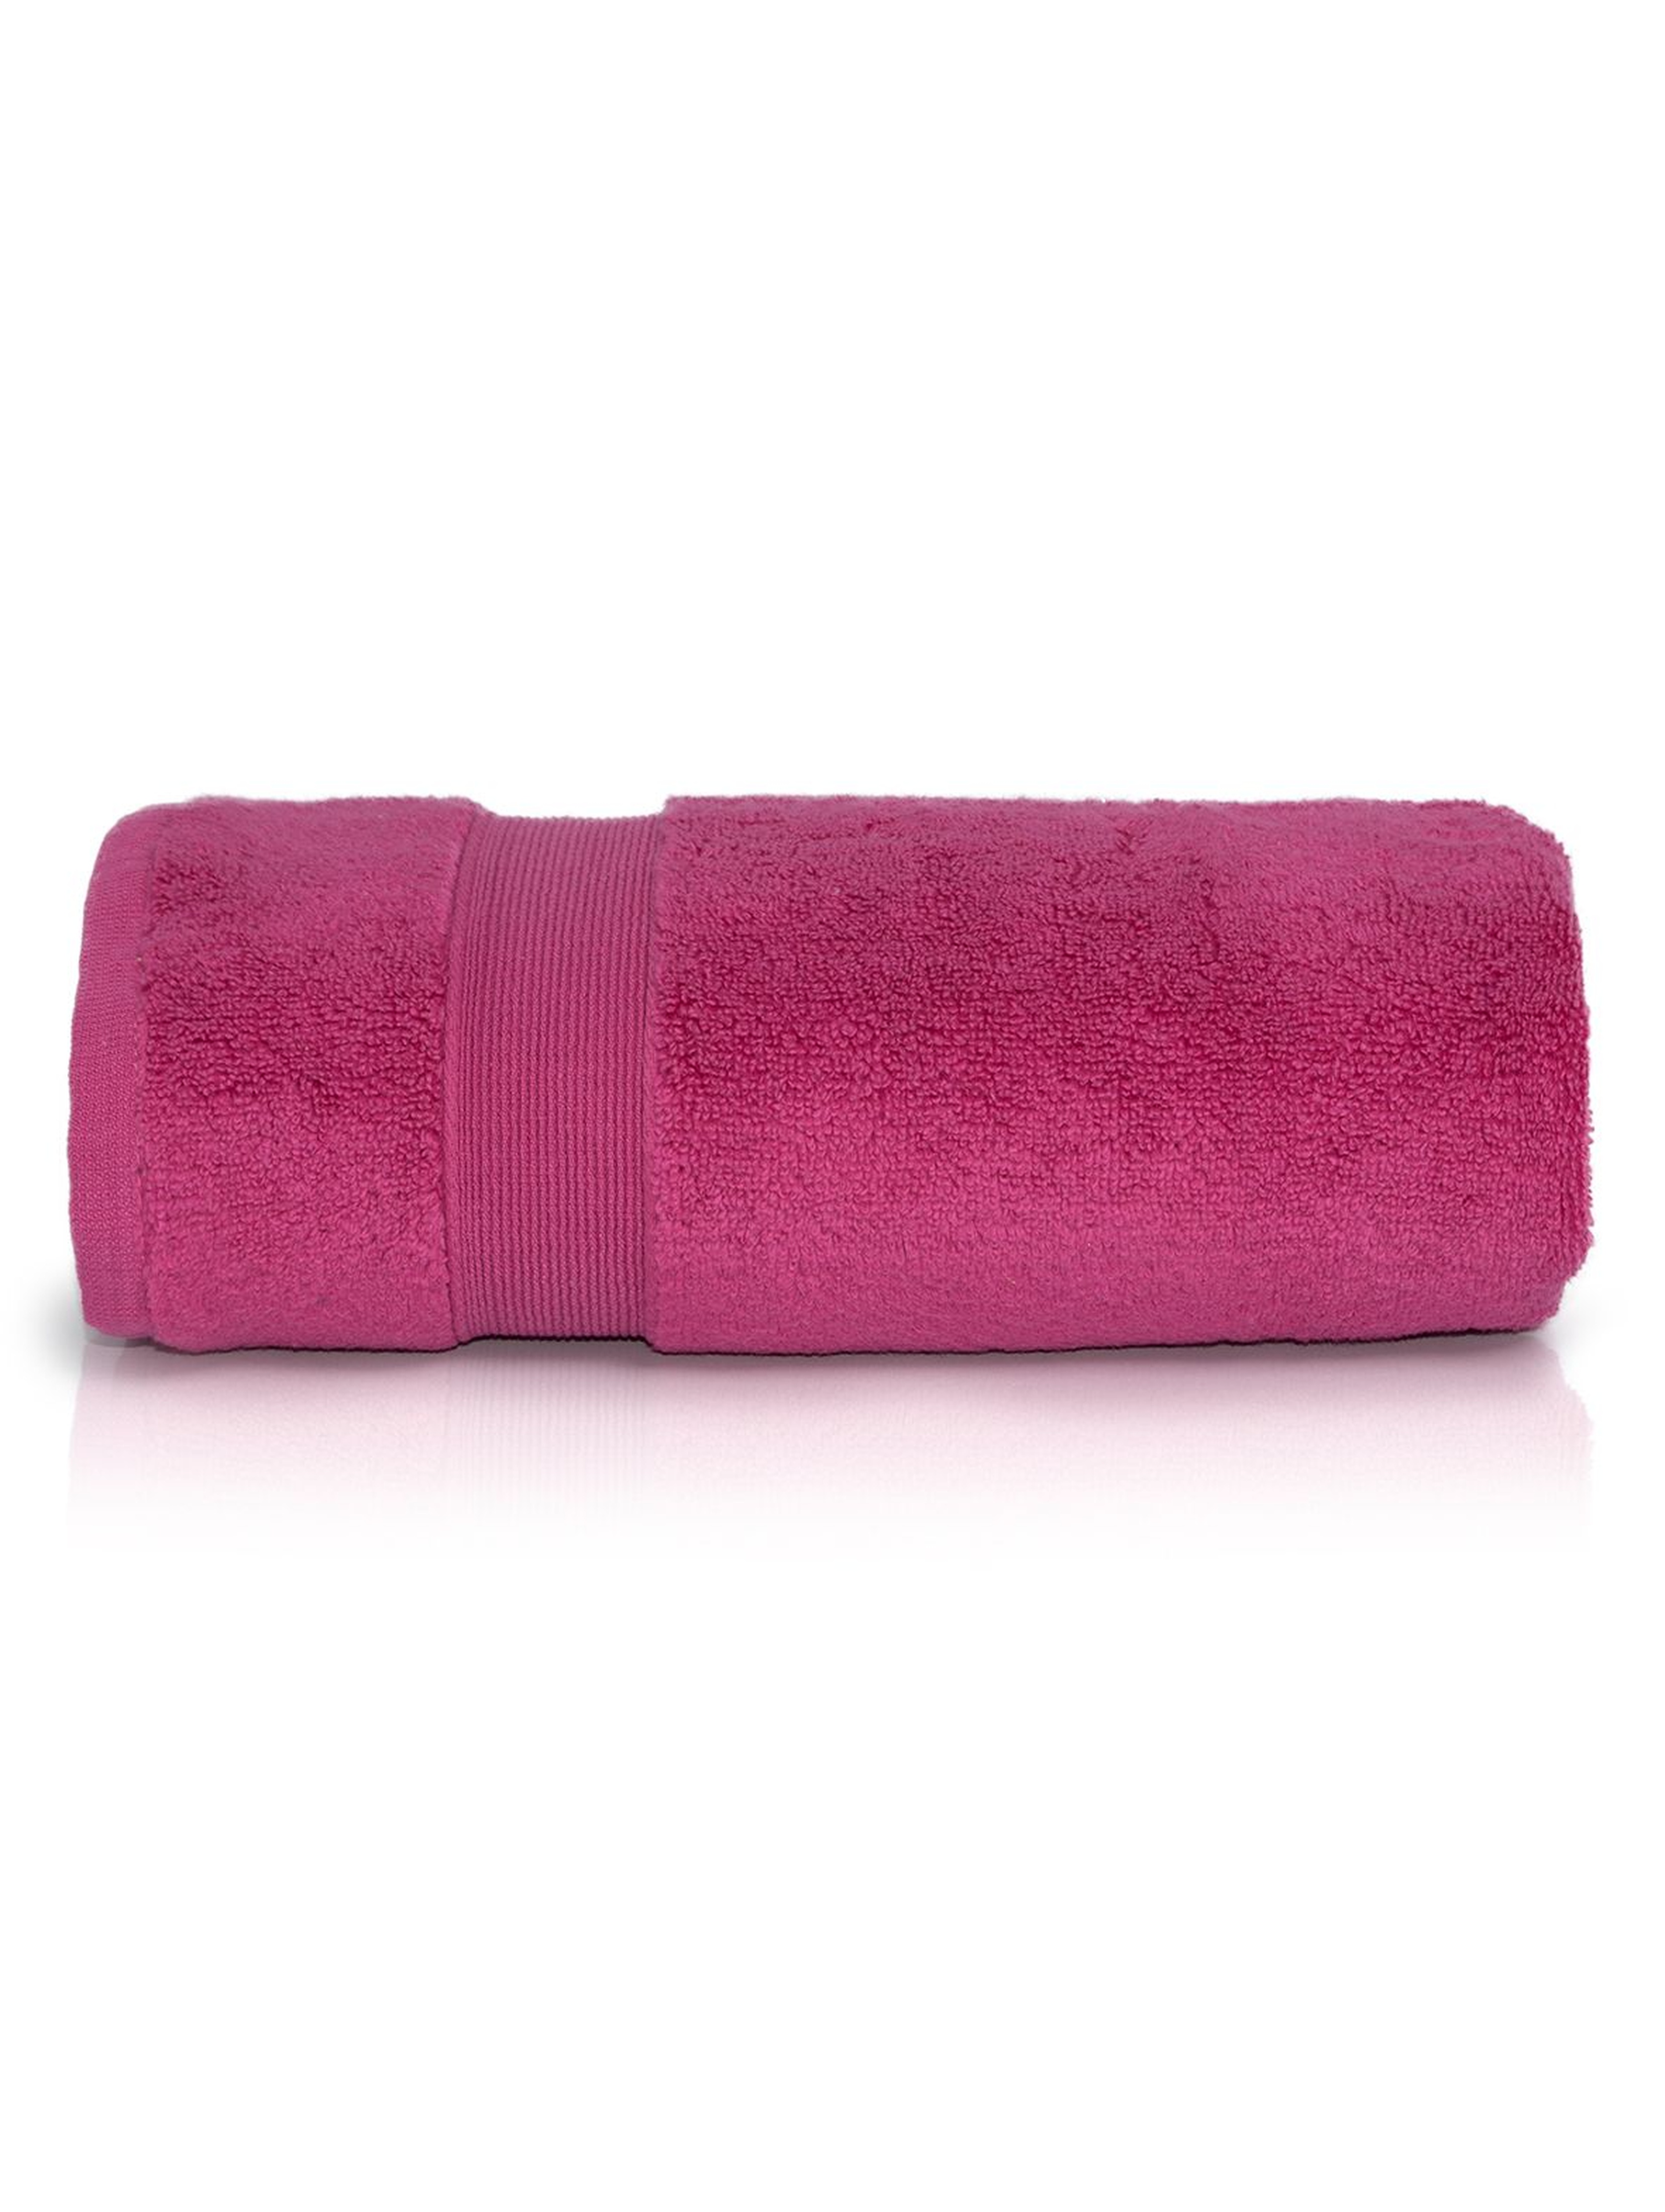 Bawełniany ręcznikROCCO 70x140 cm - różowy